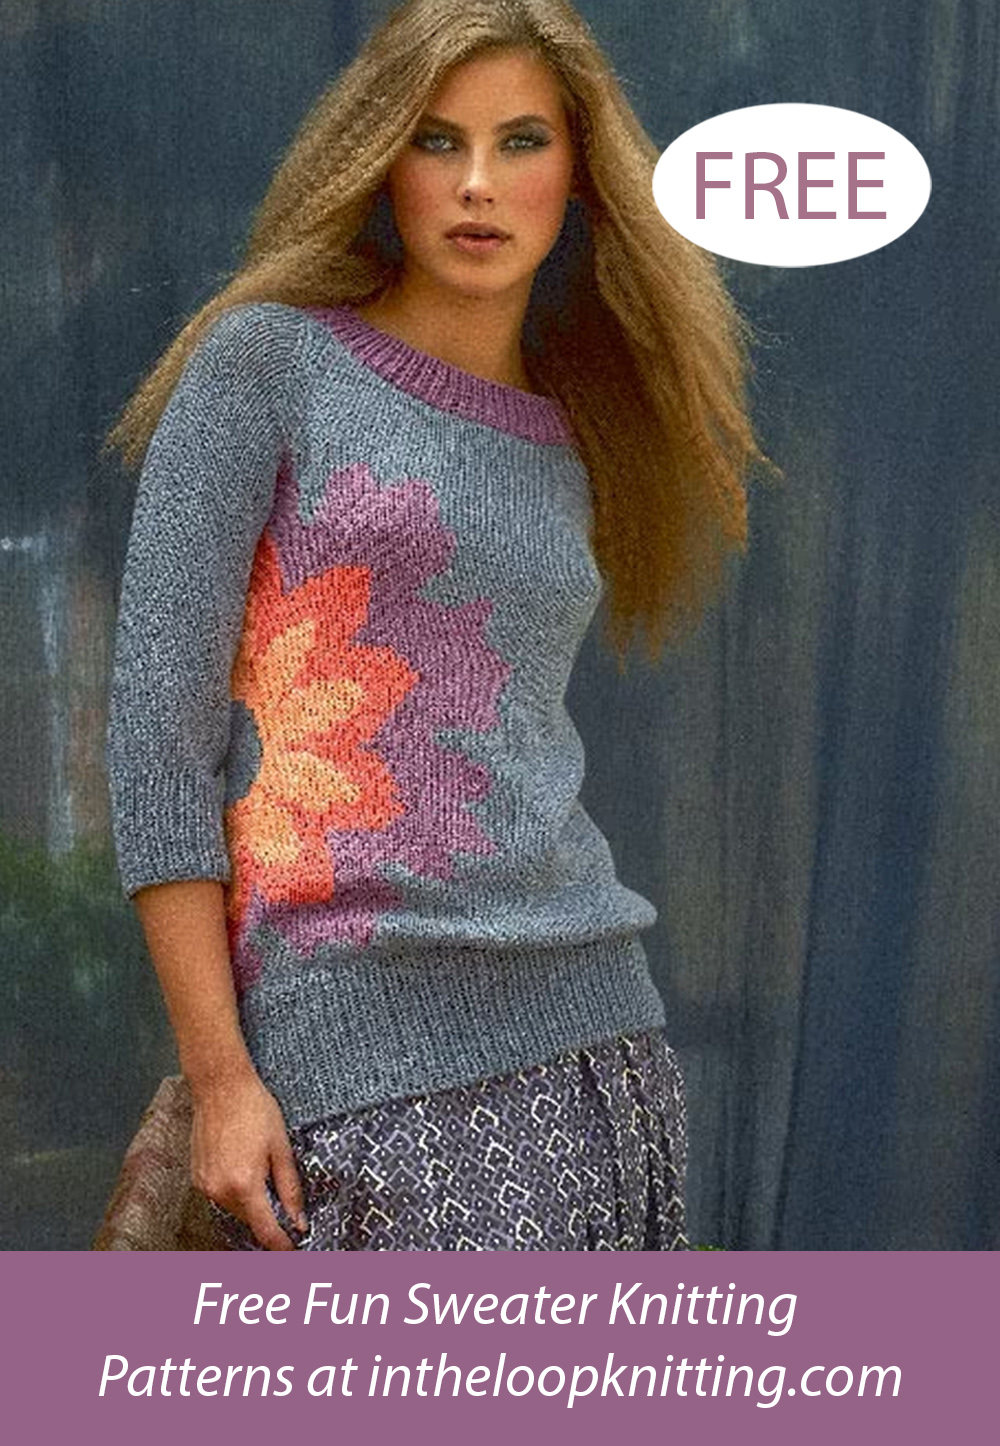 Free Raglan Sweater with Flower Knitting Pattern